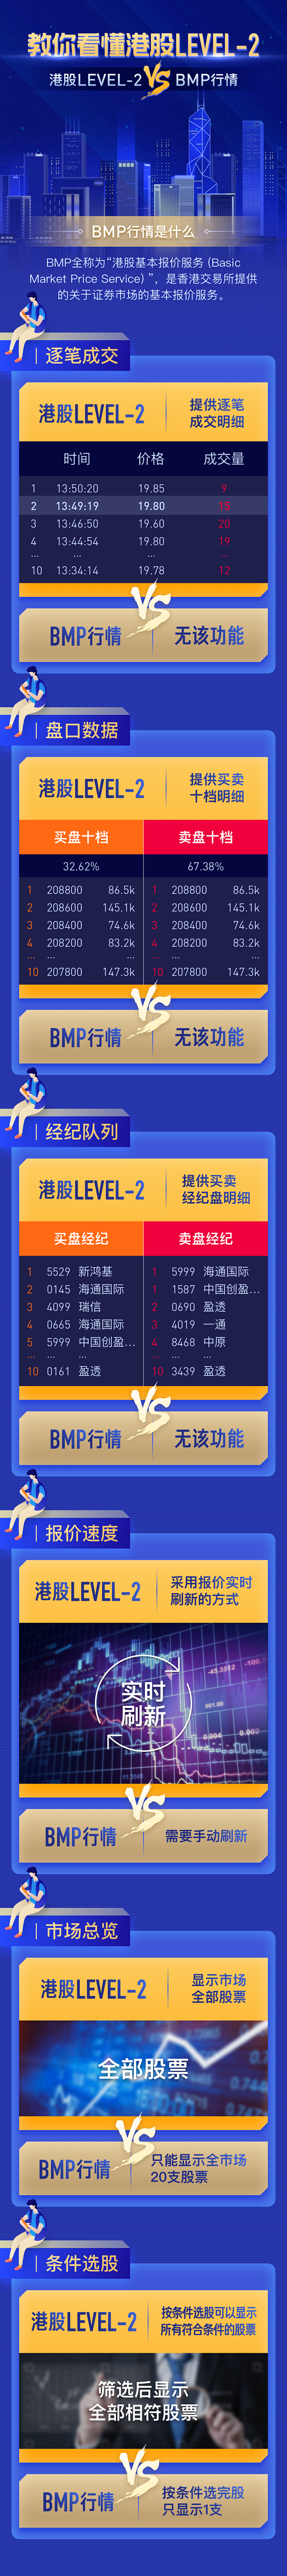 港股level-2行情介绍